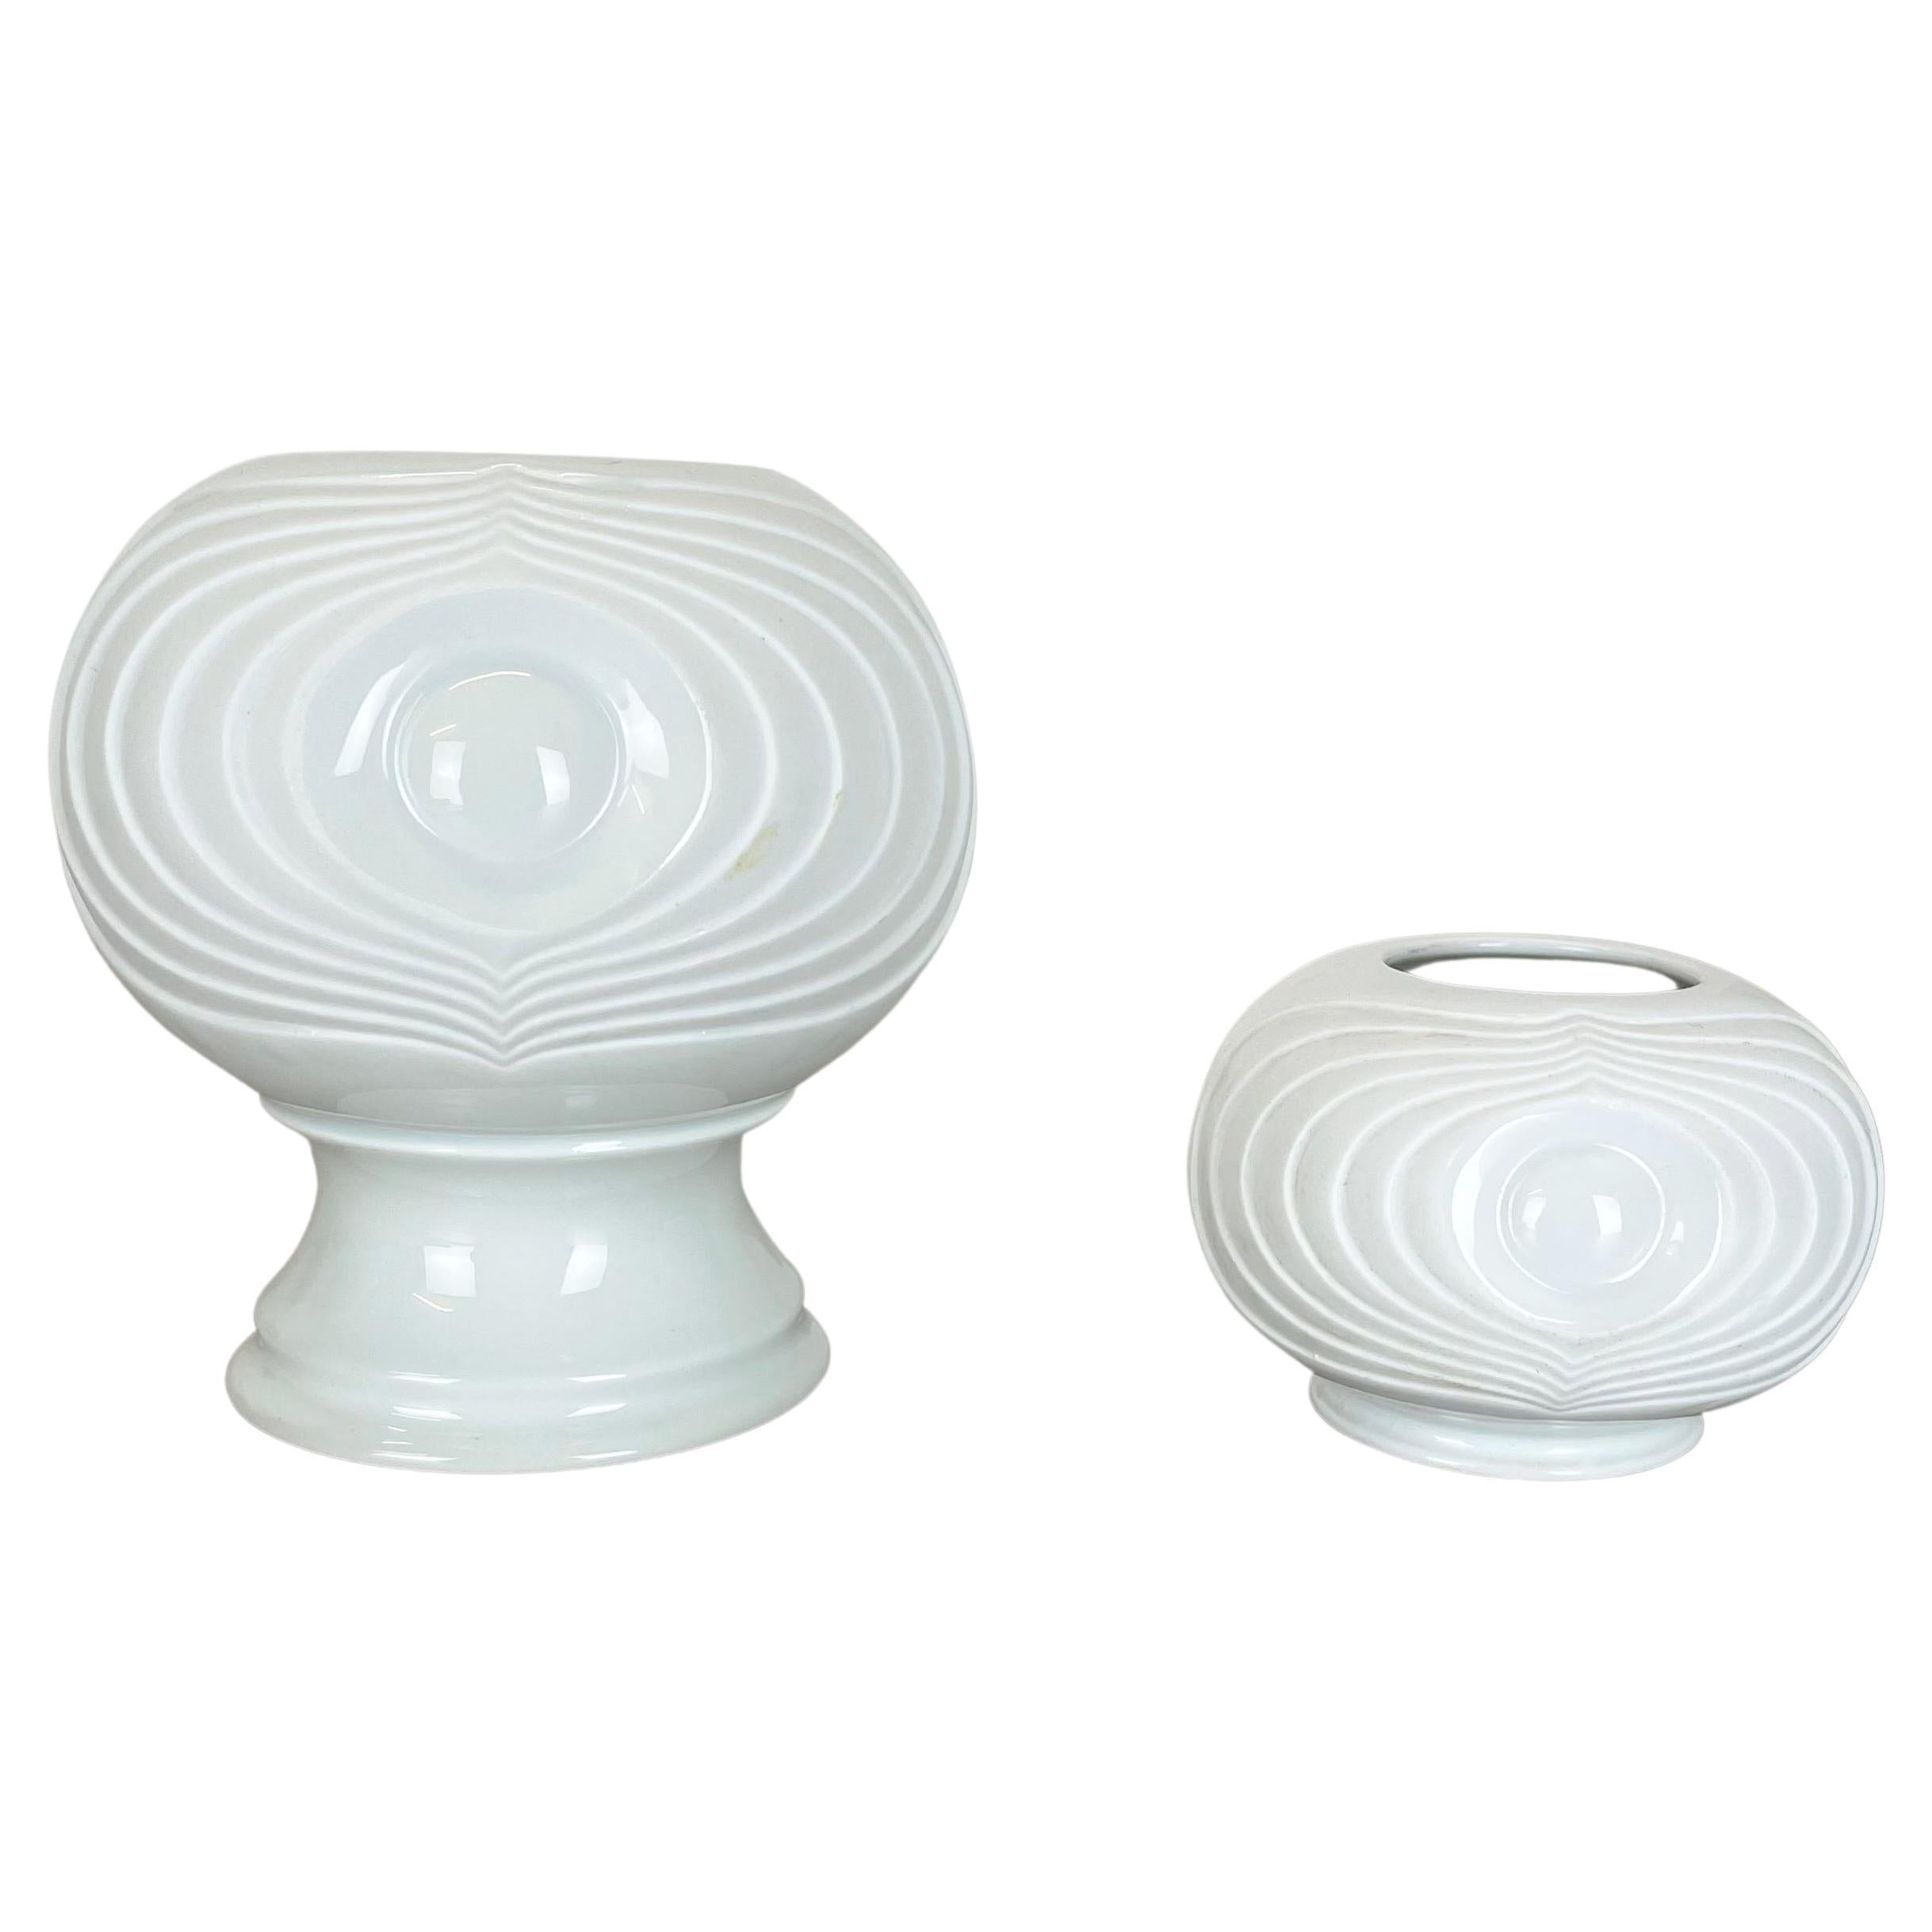 Set of 2 Original Porcelain OP Art Vase Made by Royal Bavaria KPM Germany, 1970s For Sale